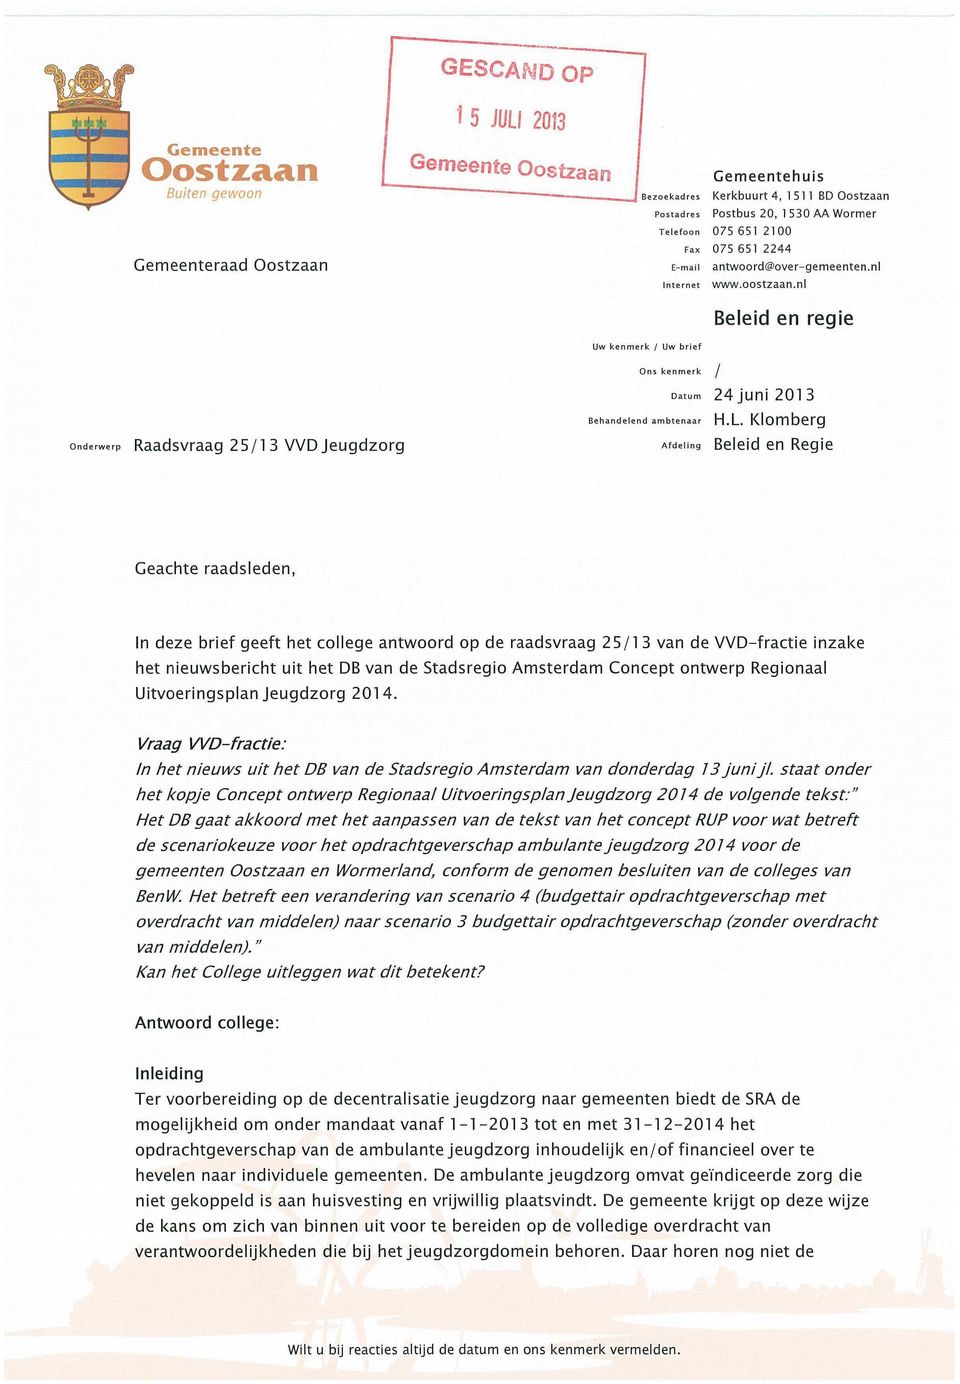 Klomberg Onderwerp Raadsvraag 25/13 VVD Jeugdzorg Afdelmg Beleid en Regie Geachte raadsleden, In deze brief geeft het college antwoord op de raadsvraag 25/13 van de VVD-fractie inzake het